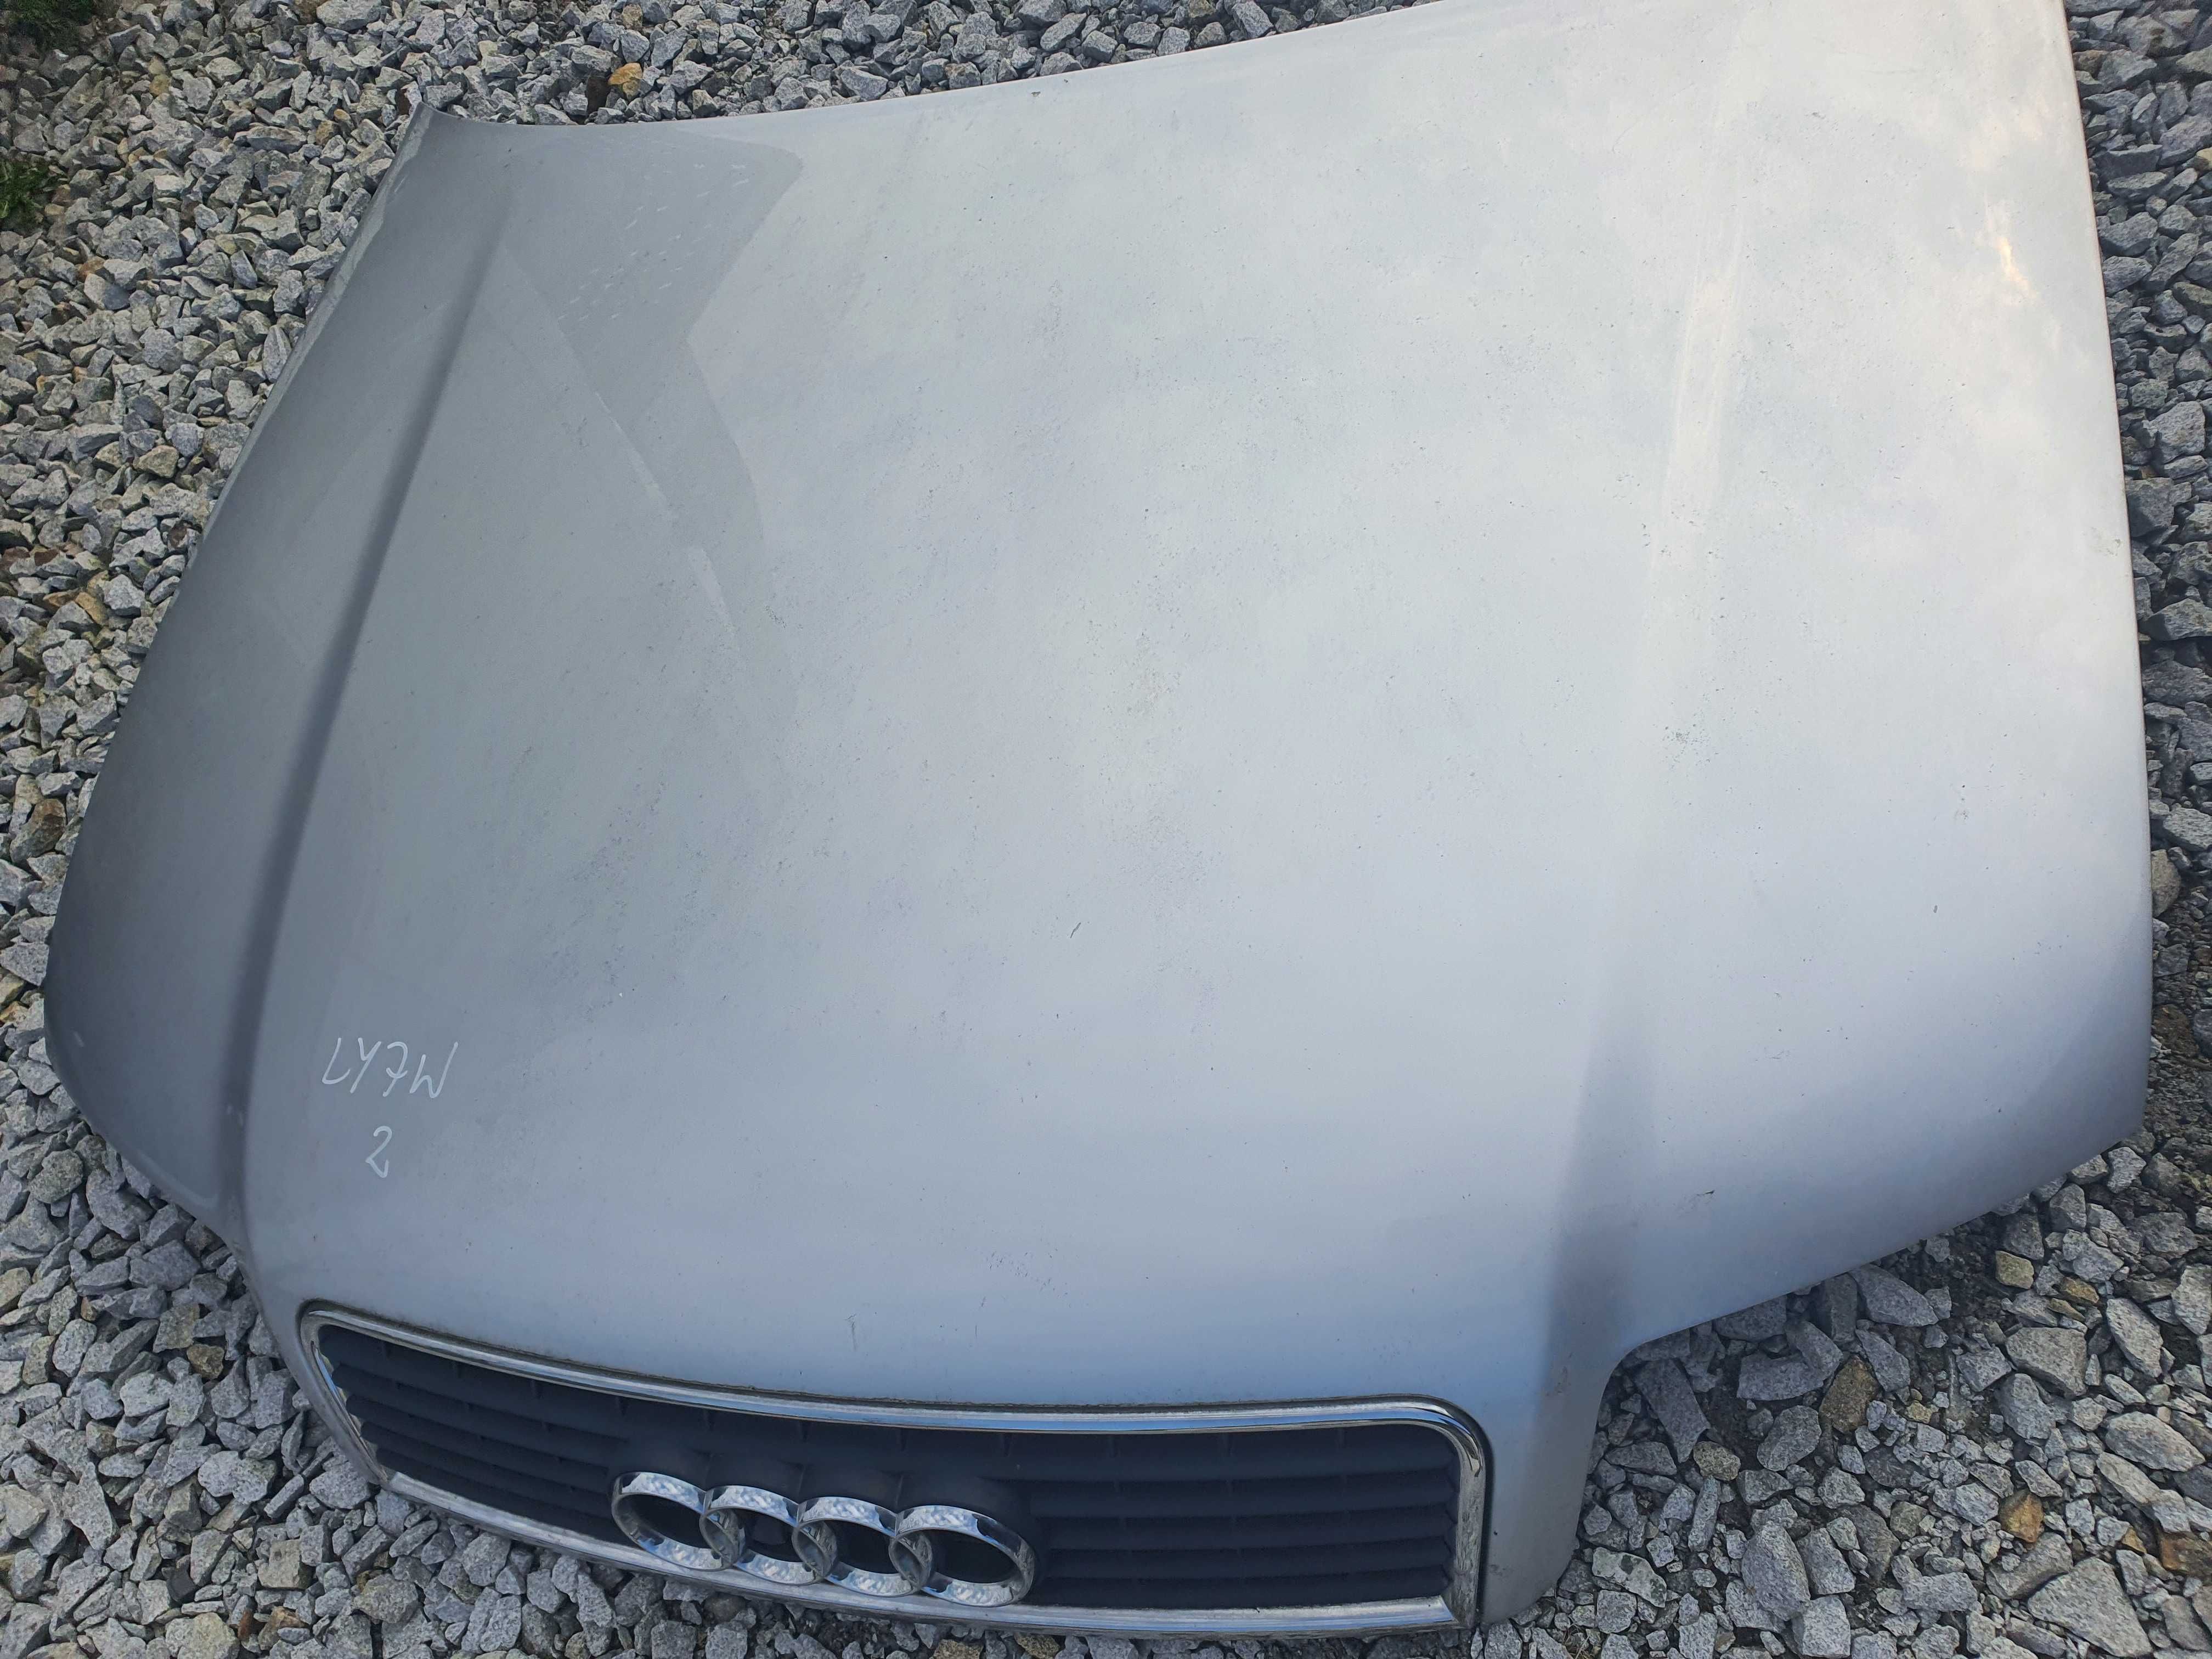 Audi A4 B6 maska przednia srebrna kolor LY7W 2